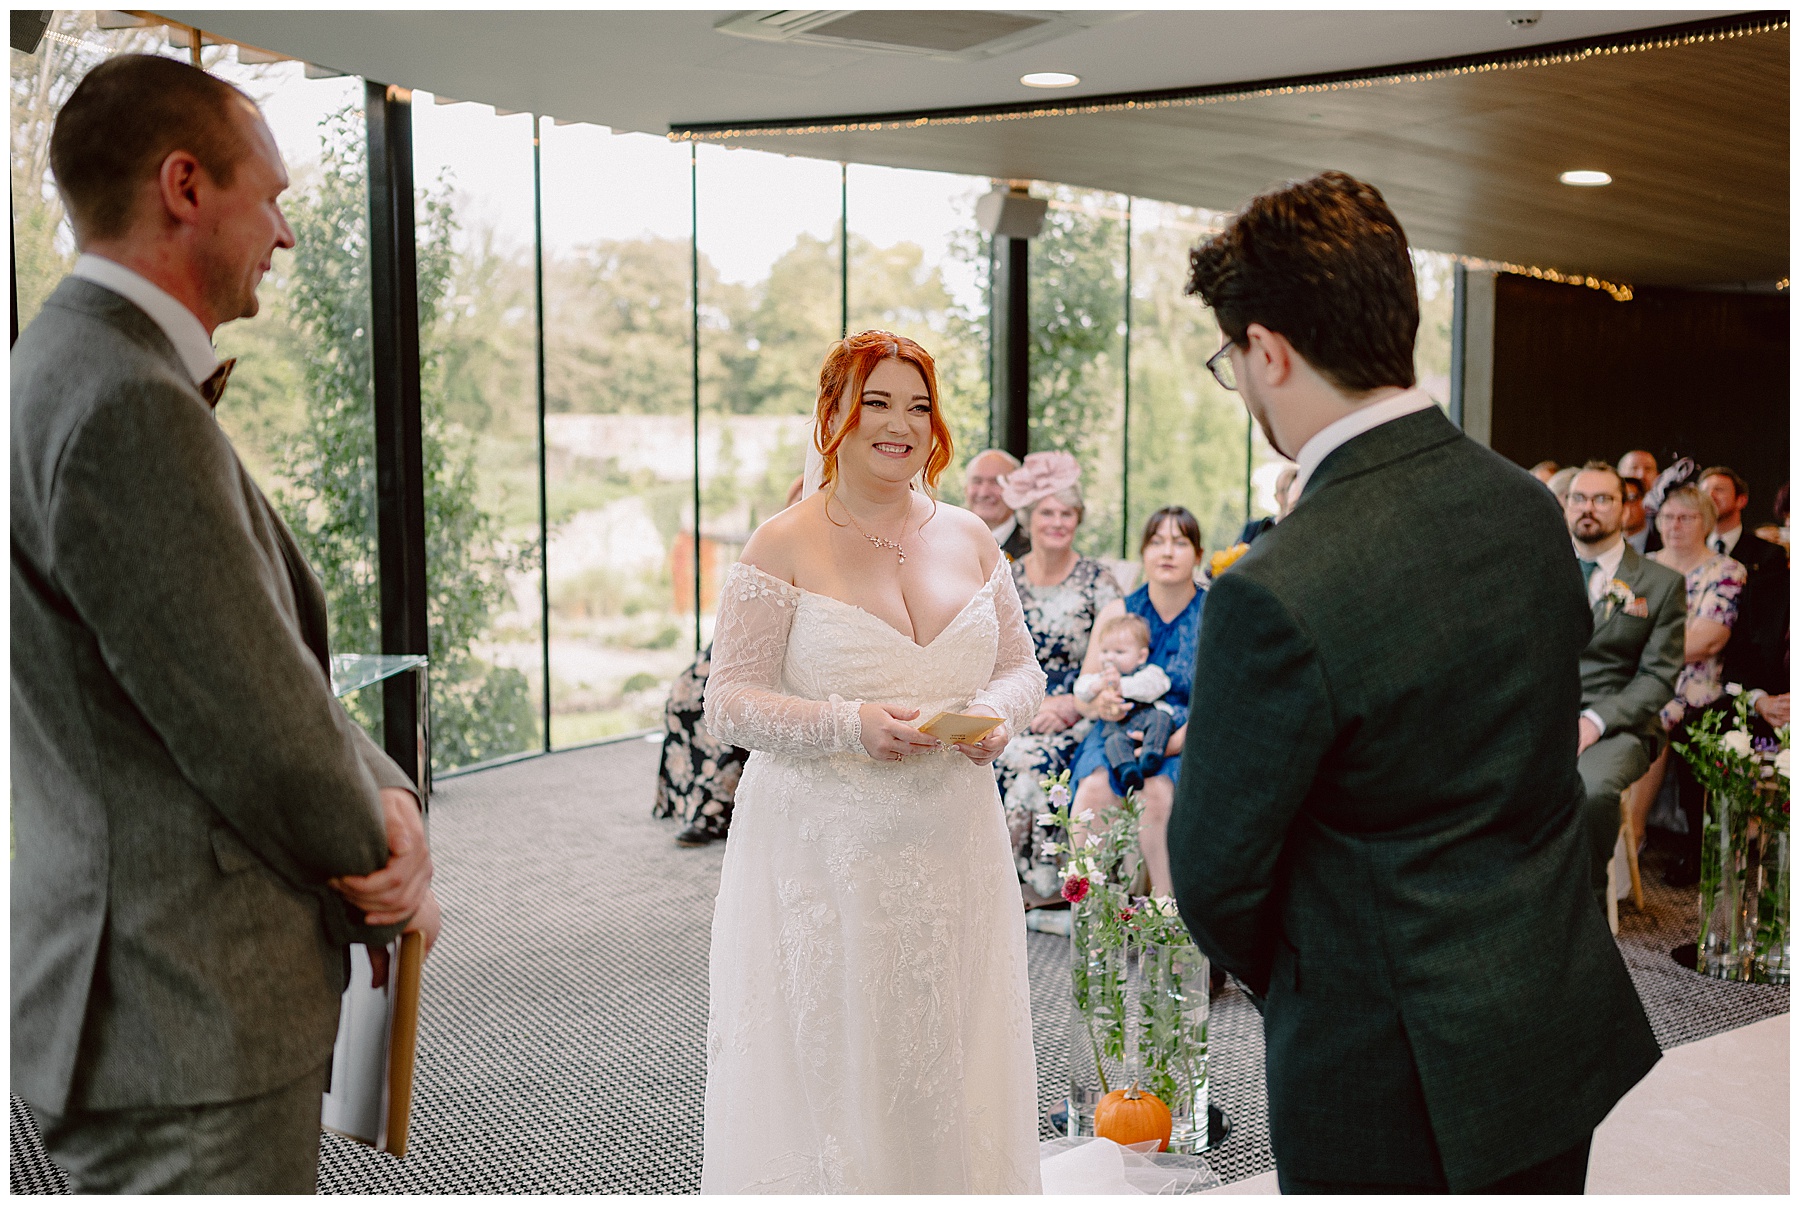 Wedding Service at Fairyhill Gower